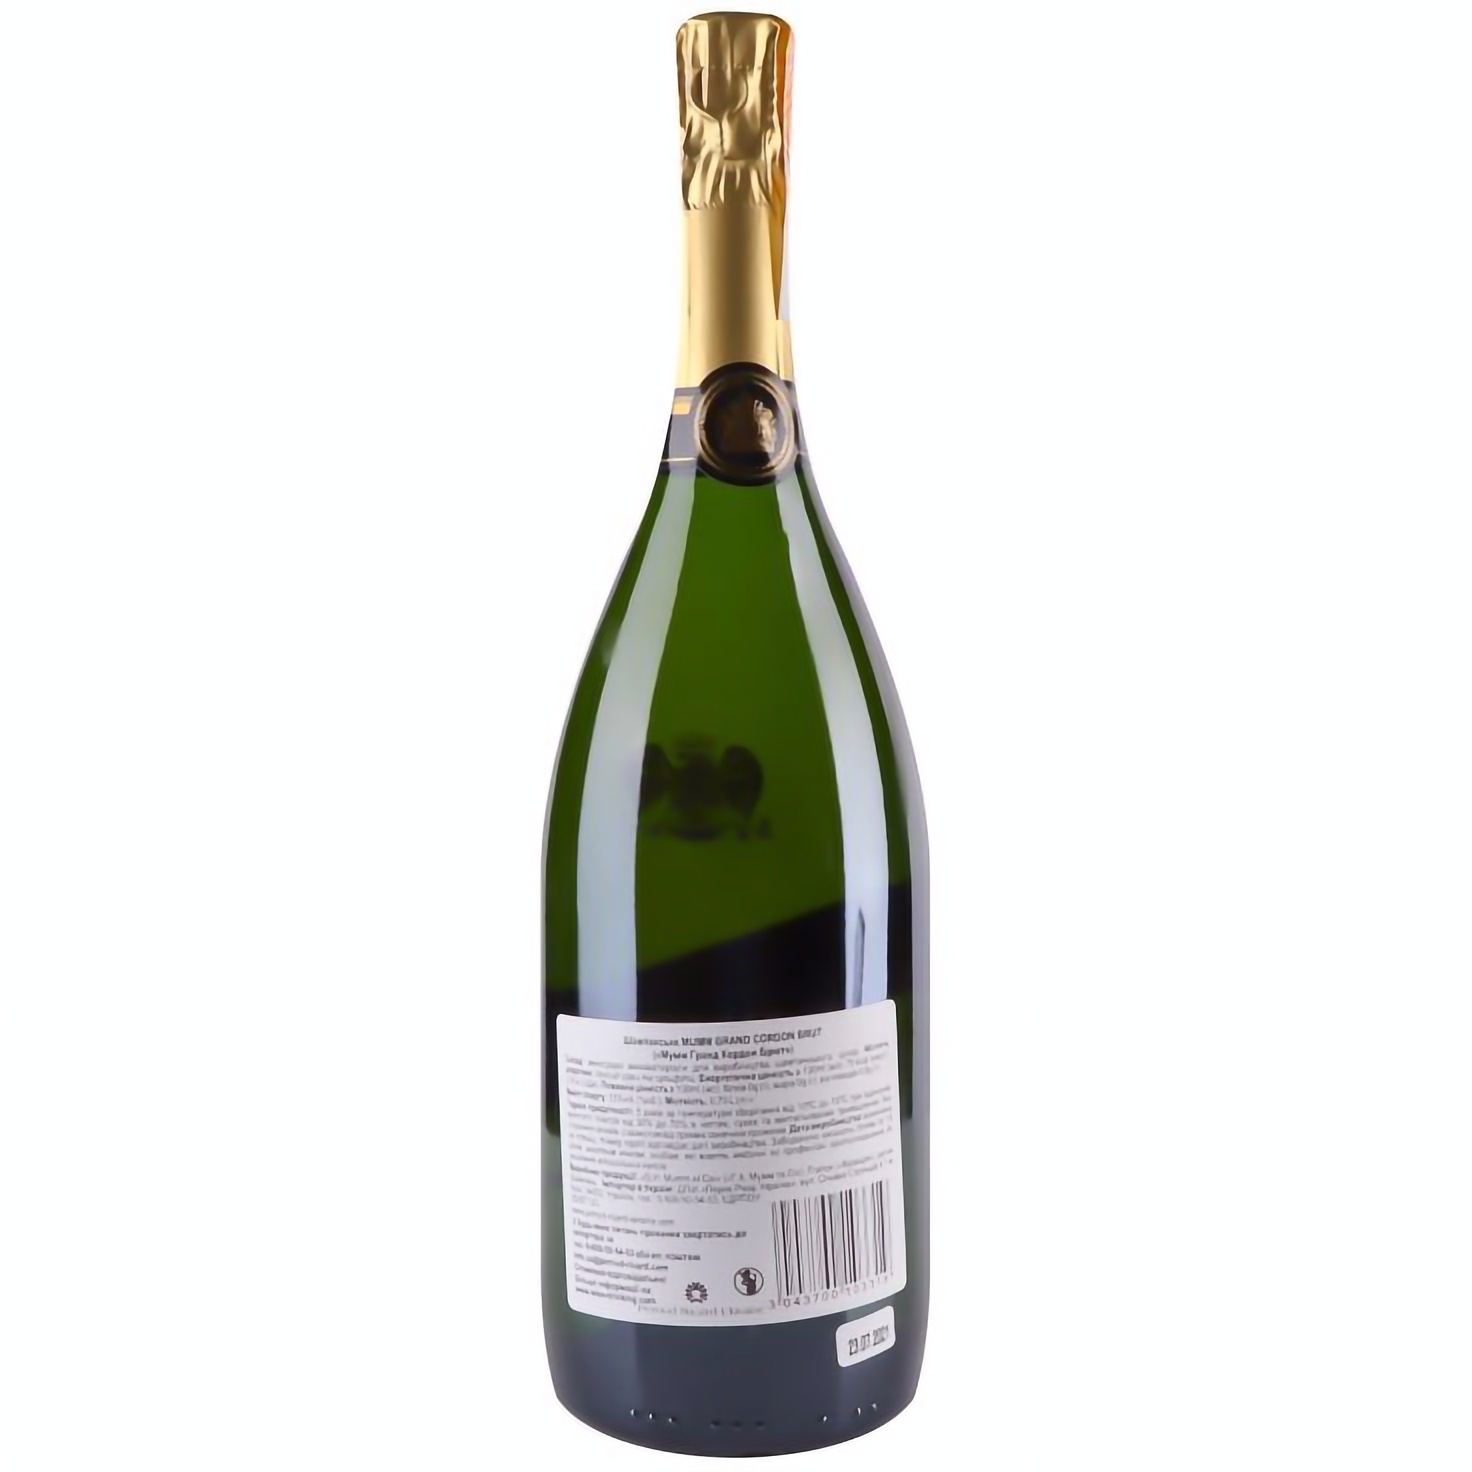 Шампанское Mumm Grand Cordon Brut, 12%, 0,75 л (3915) - фото 2